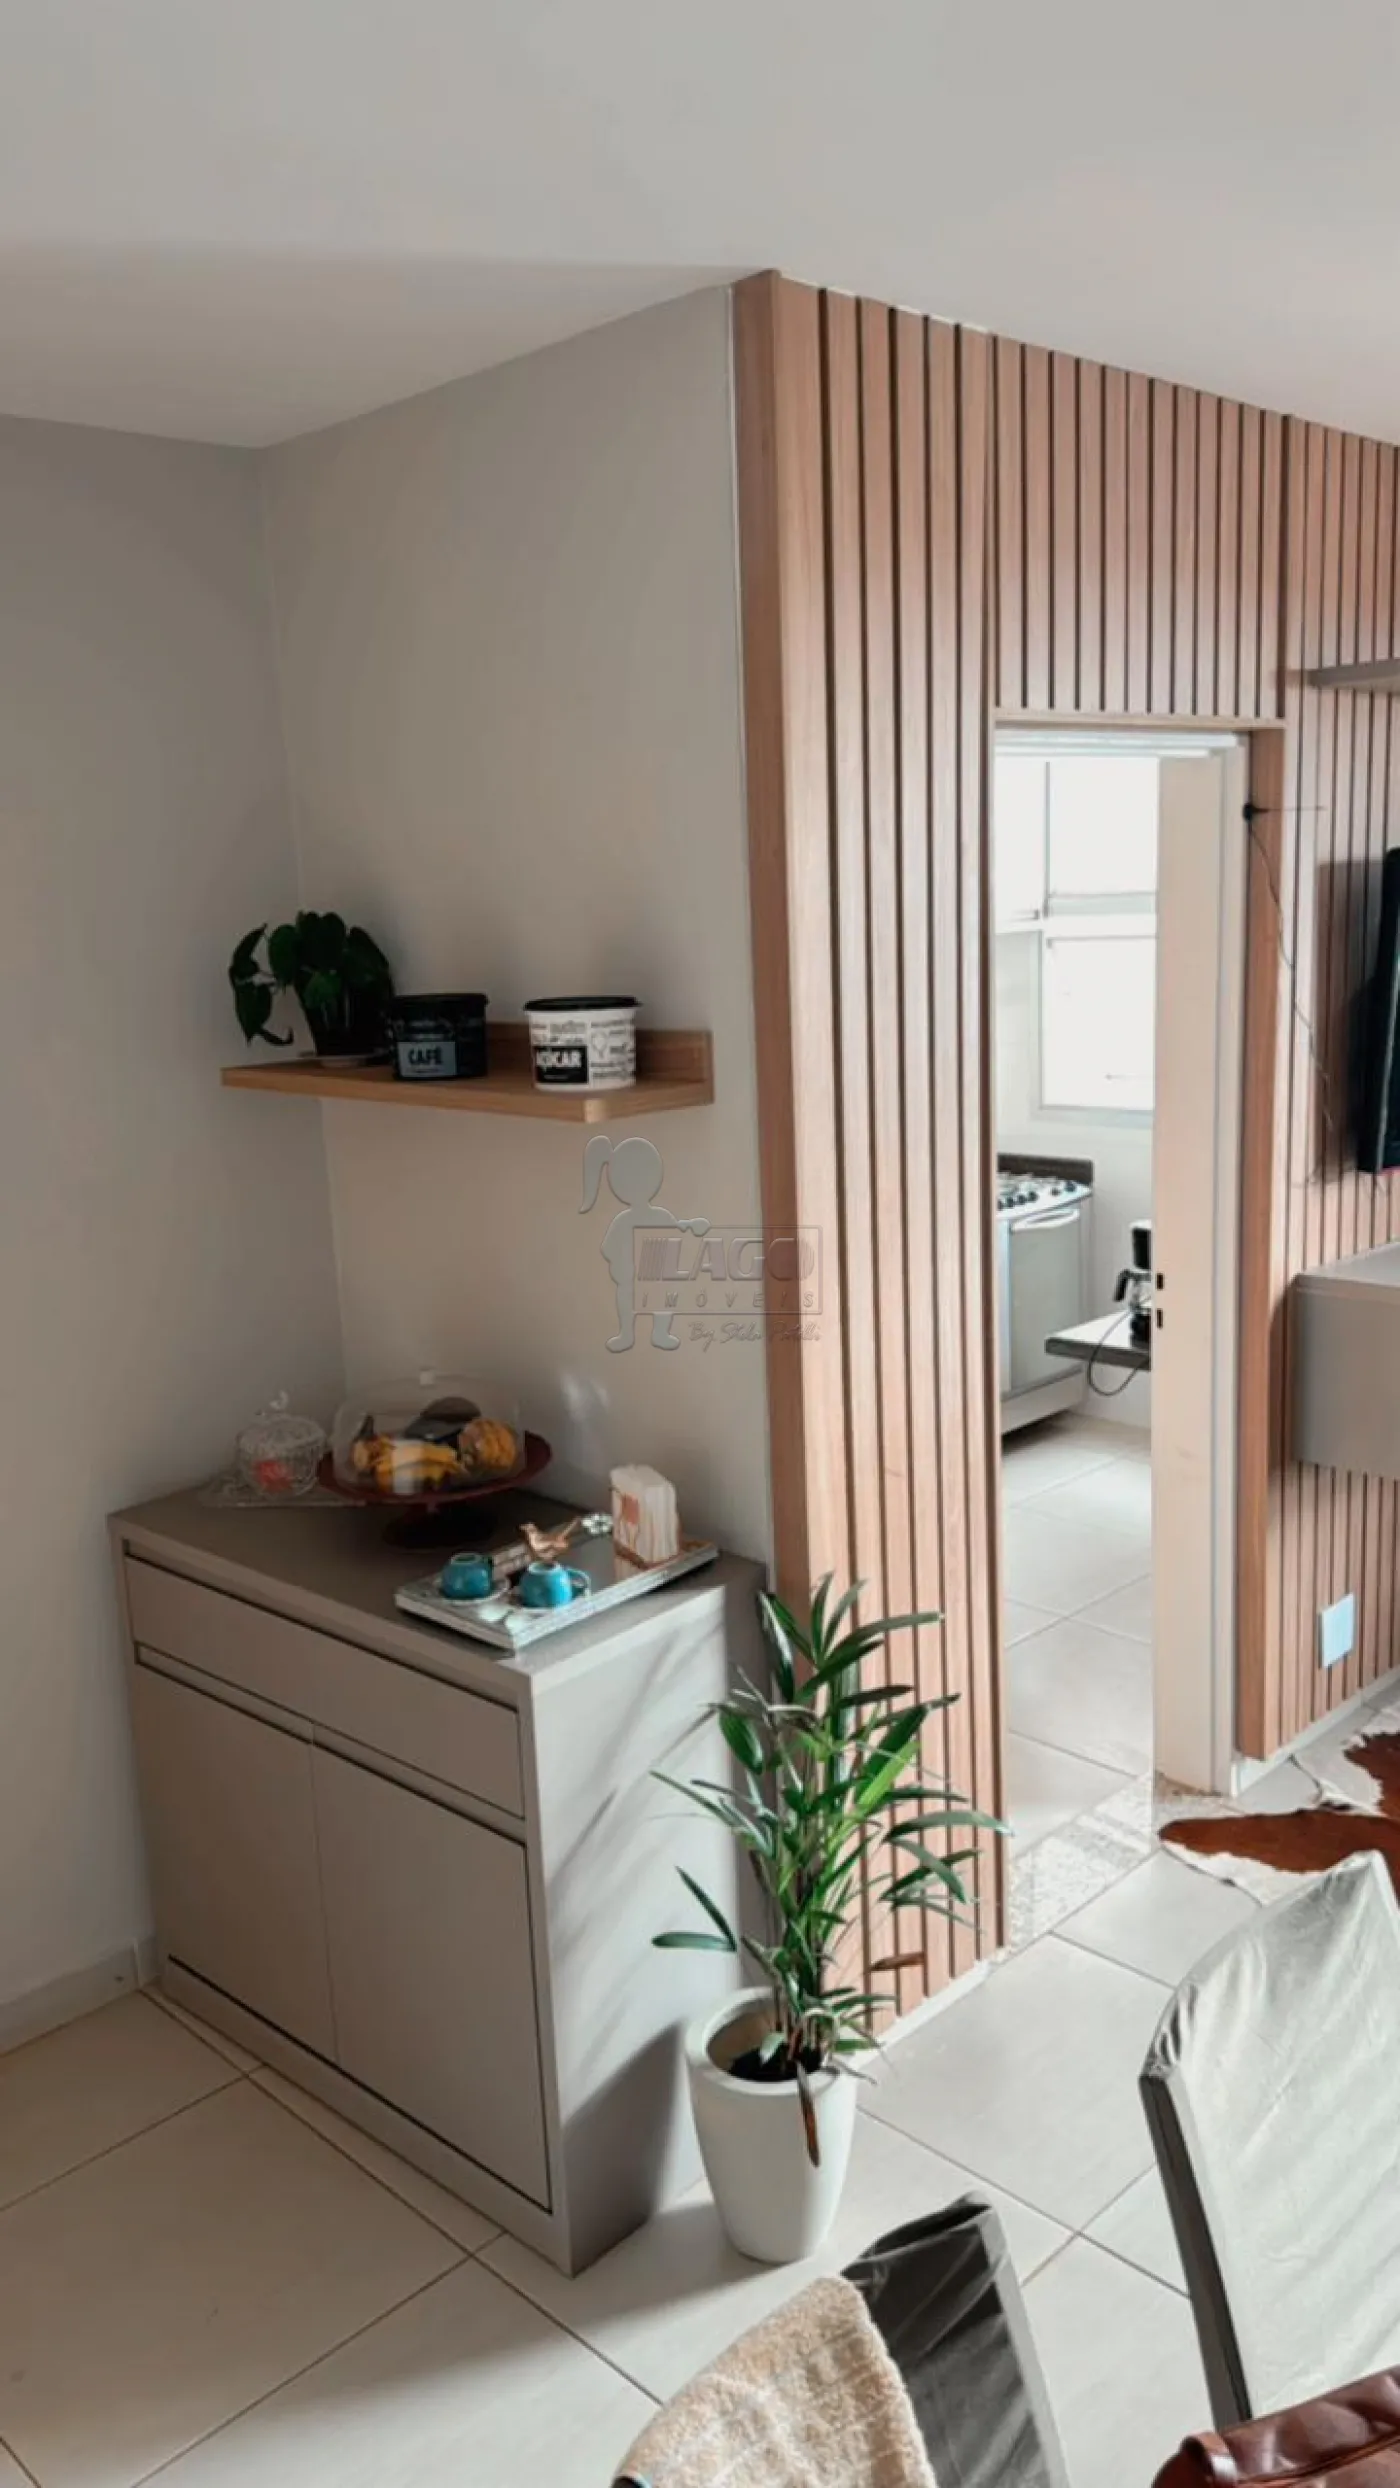 Comprar Apartamento / Duplex em Ribeirão Preto R$ 220.000,00 - Foto 4